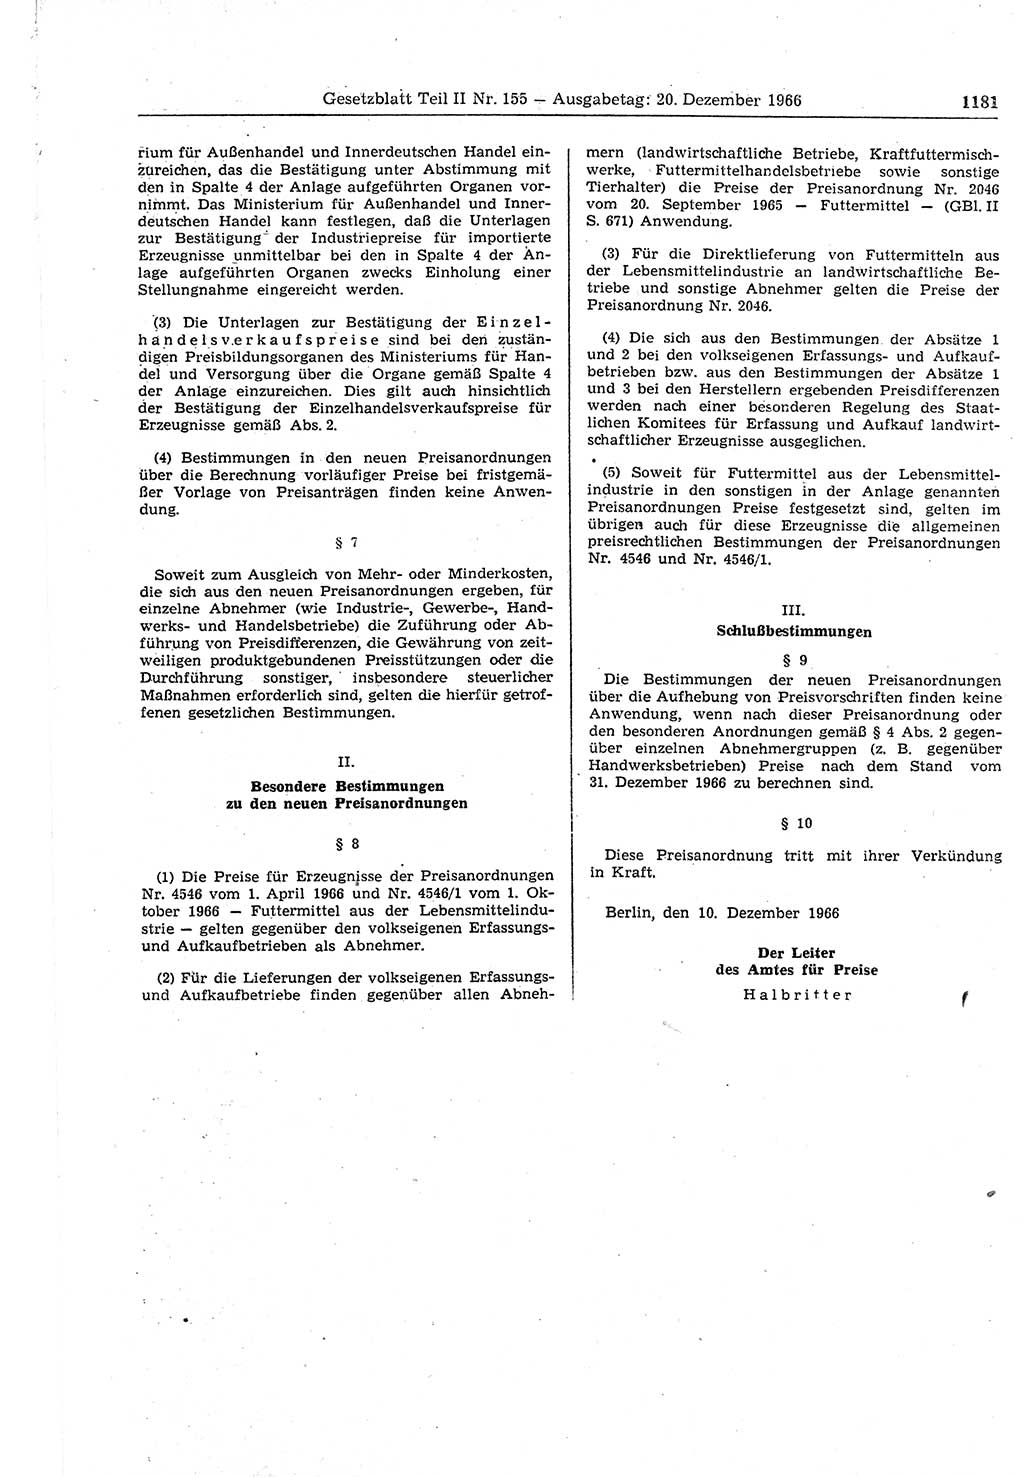 Gesetzblatt (GBl.) der Deutschen Demokratischen Republik (DDR) Teil ⅠⅠ 1966, Seite 1181 (GBl. DDR ⅠⅠ 1966, S. 1181)